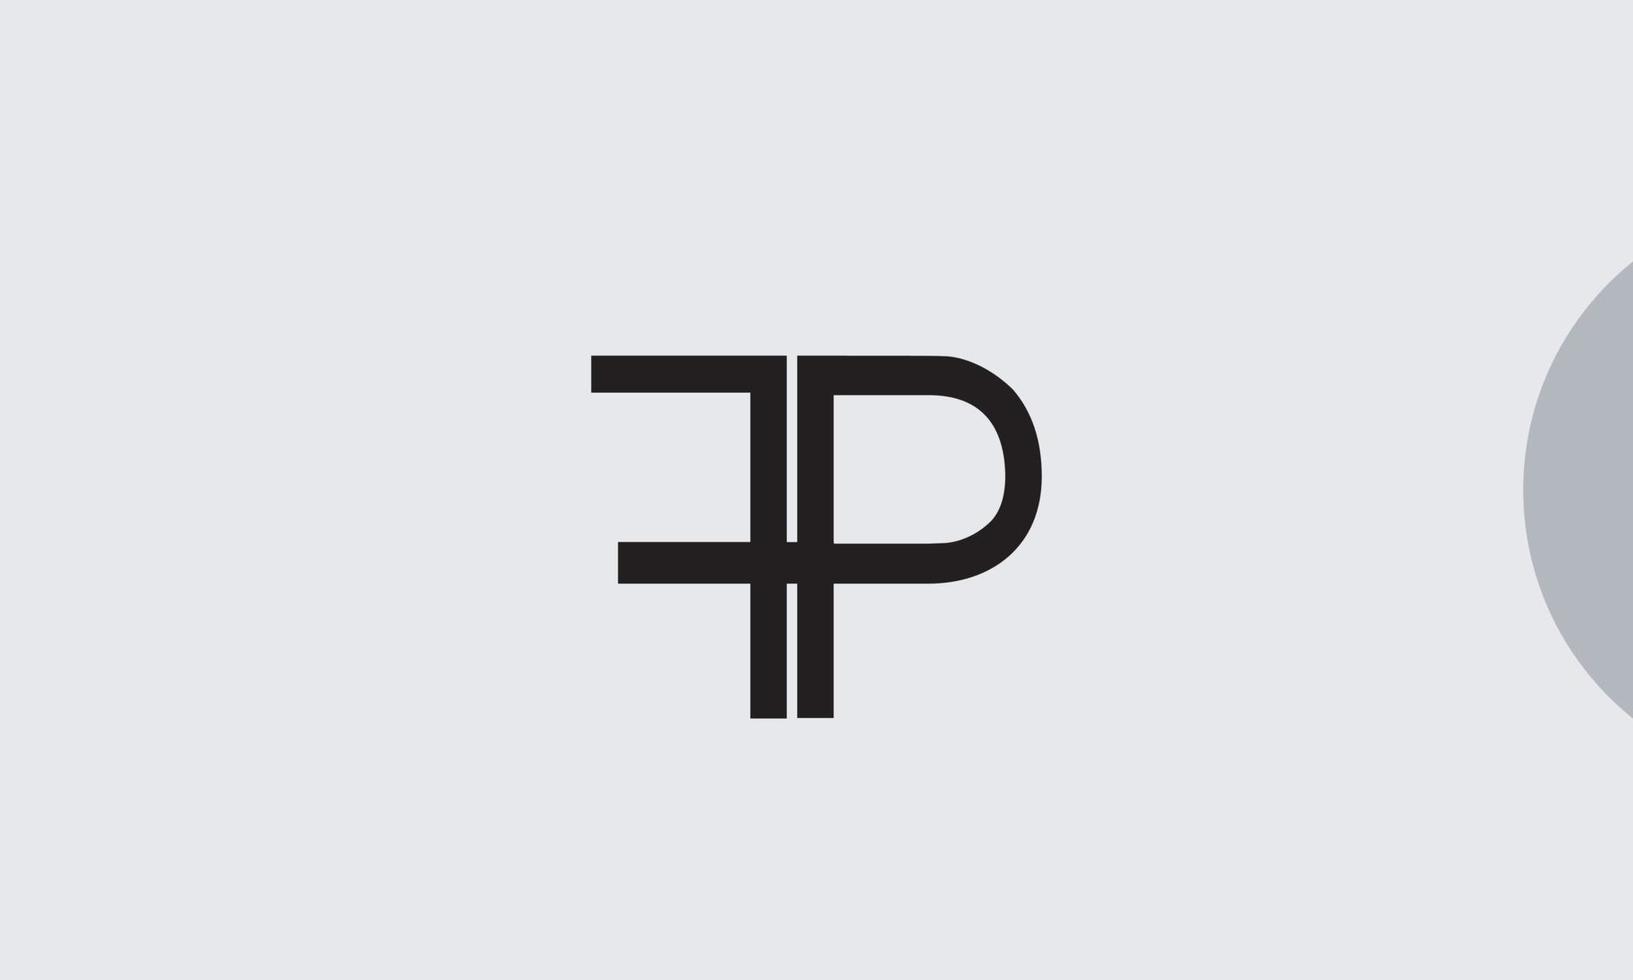 alphabet lettres initiales monogramme logo fp, pf, f et p vecteur